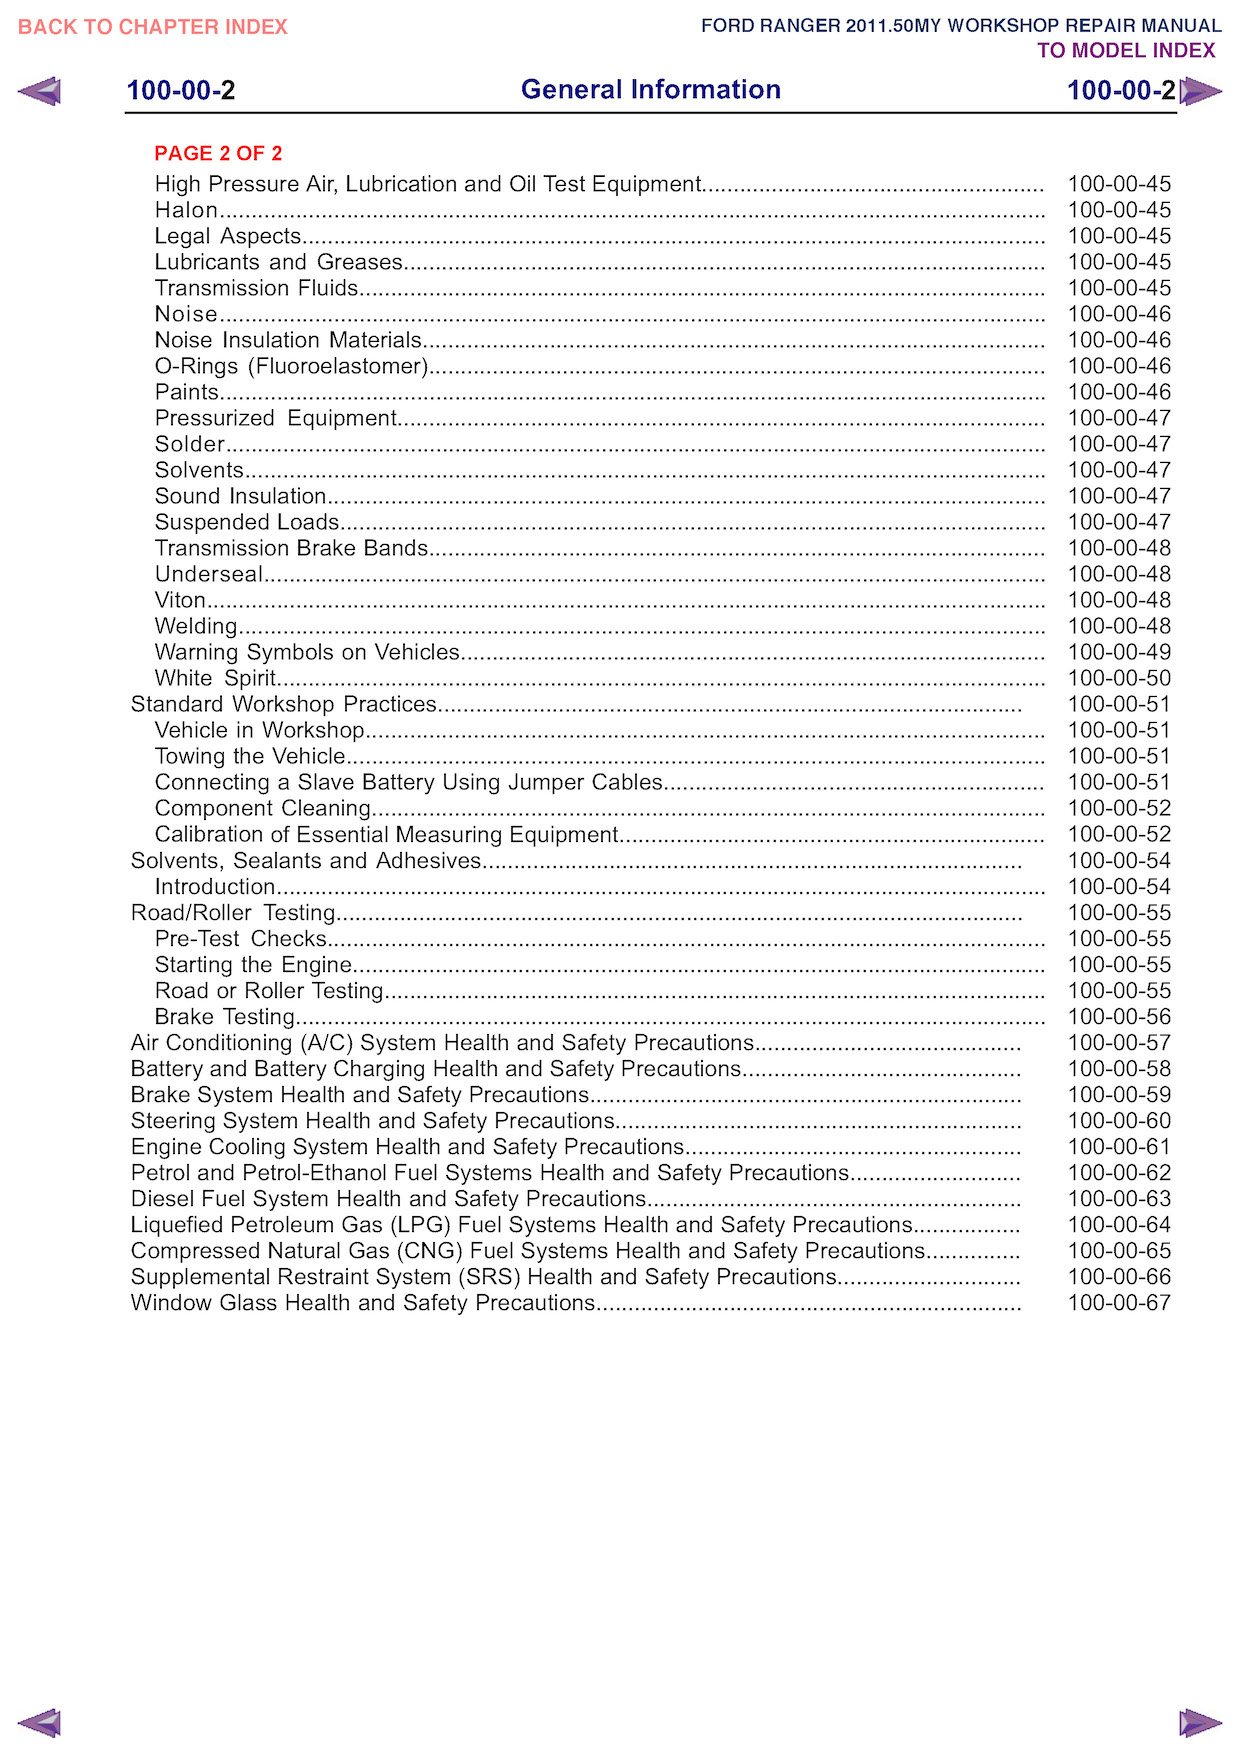 Download 2011 Ford Ranger Service Repair Manual.